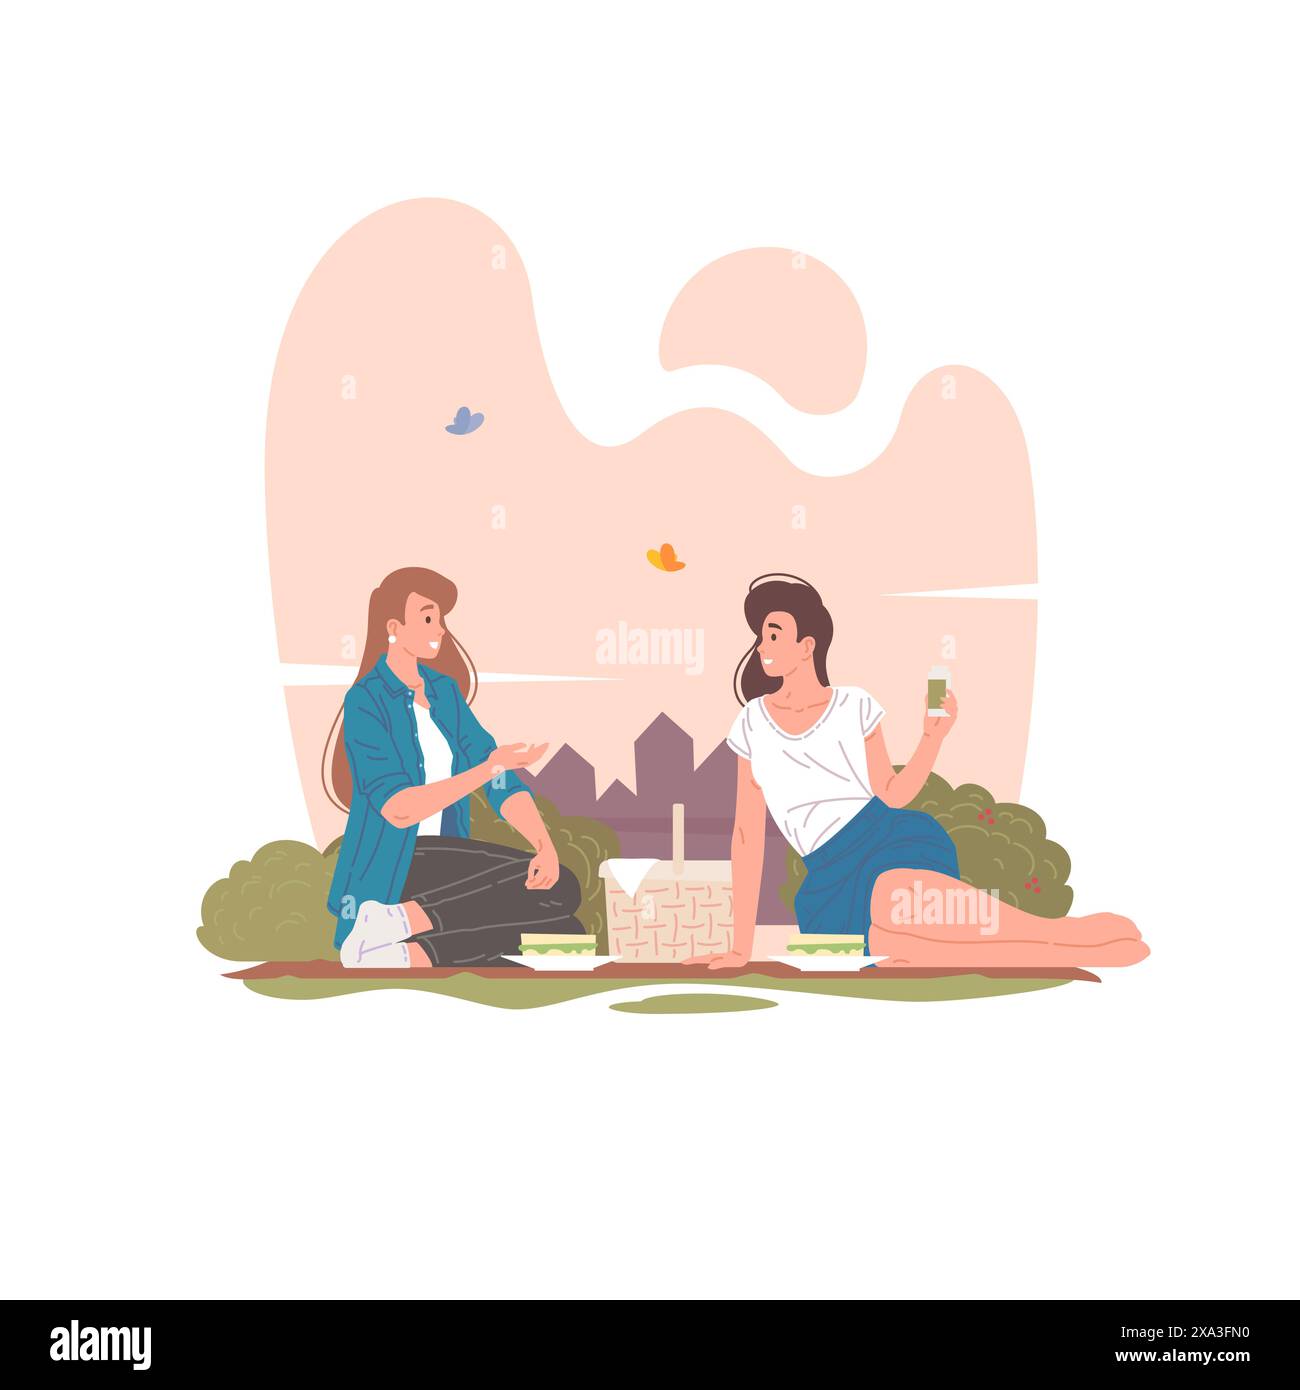 Weibliche Freunde, die Picknick in Sommerpark-Vektor-Illustration haben. Glückliche junge Frauen, die lächeln und miteinander reden, während sie auf einer Decke in der Nähe von B sitzen Stock Vektor